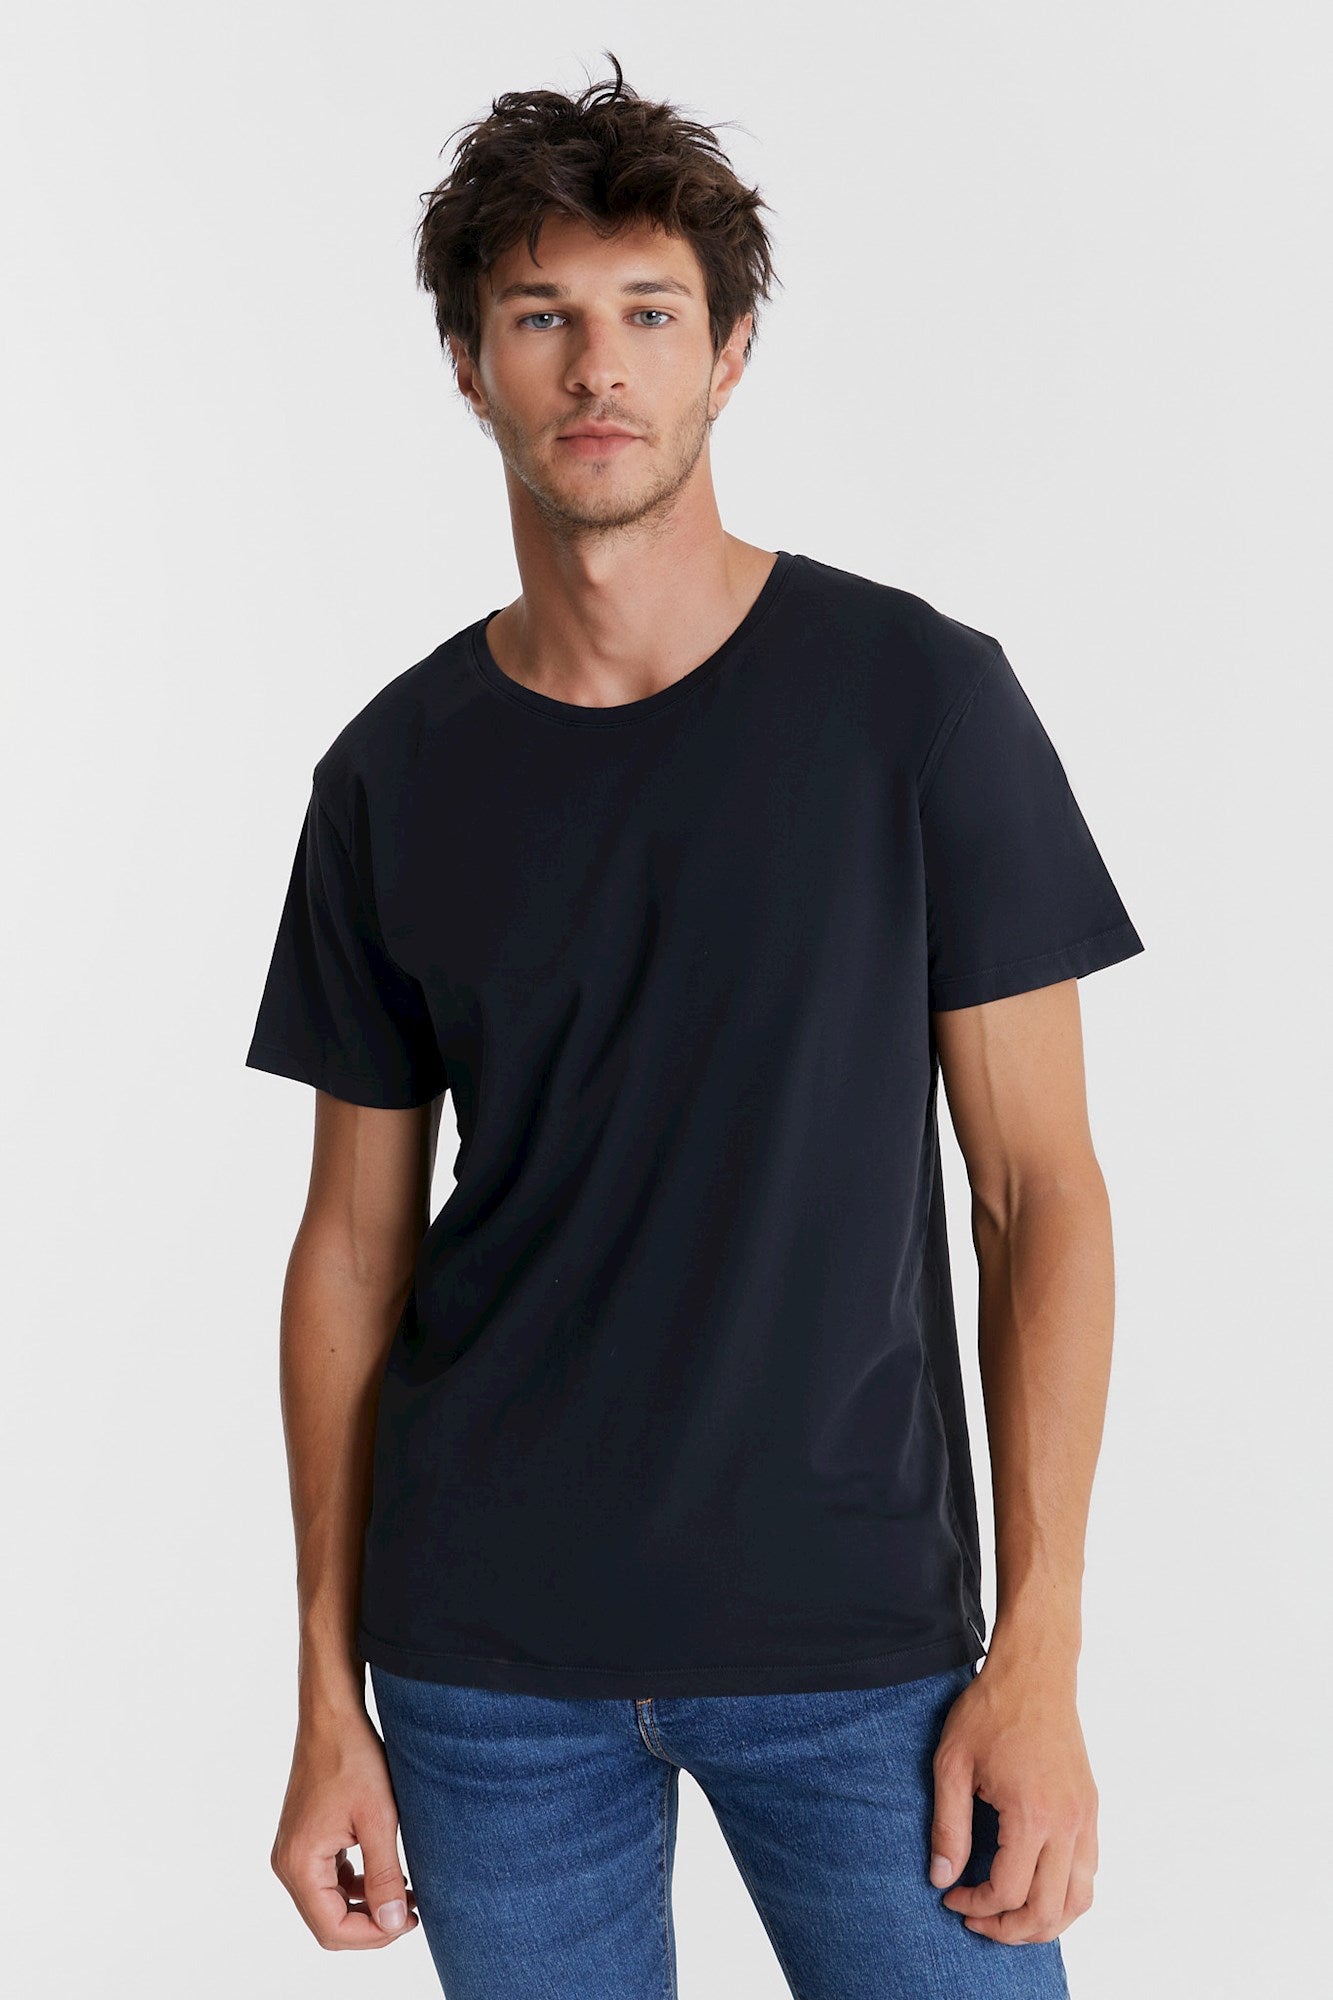 Coy - T-shirt - Black